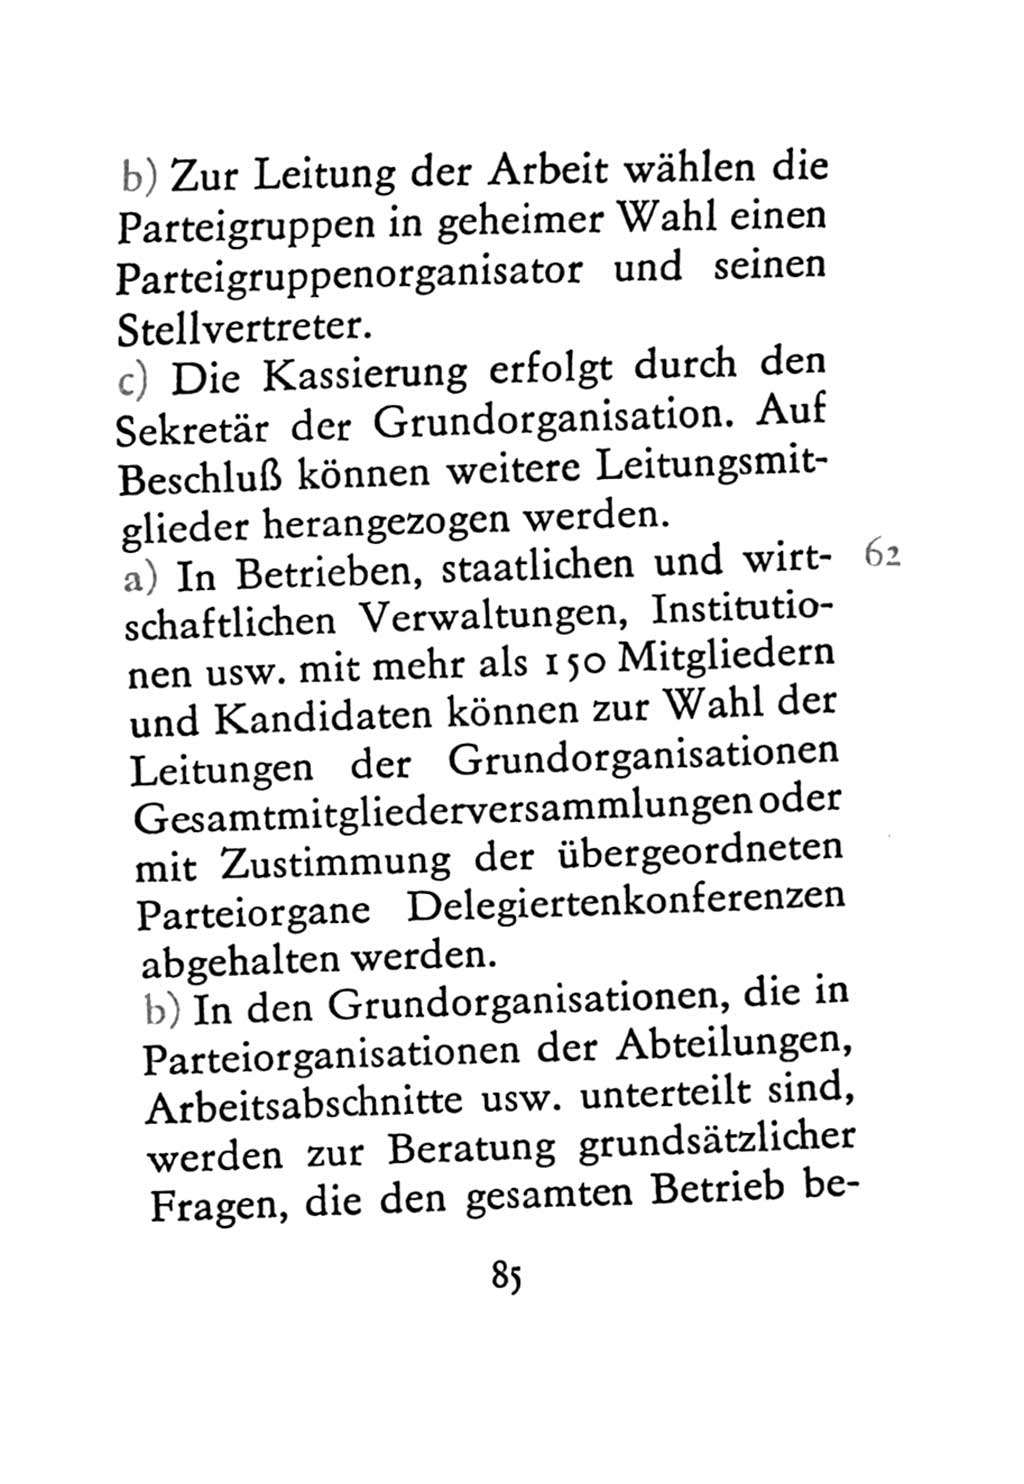 Statut der Sozialistischen Einheitspartei Deutschlands (SED) 1971, Seite 85 (St. SED DDR 1971, S. 85)